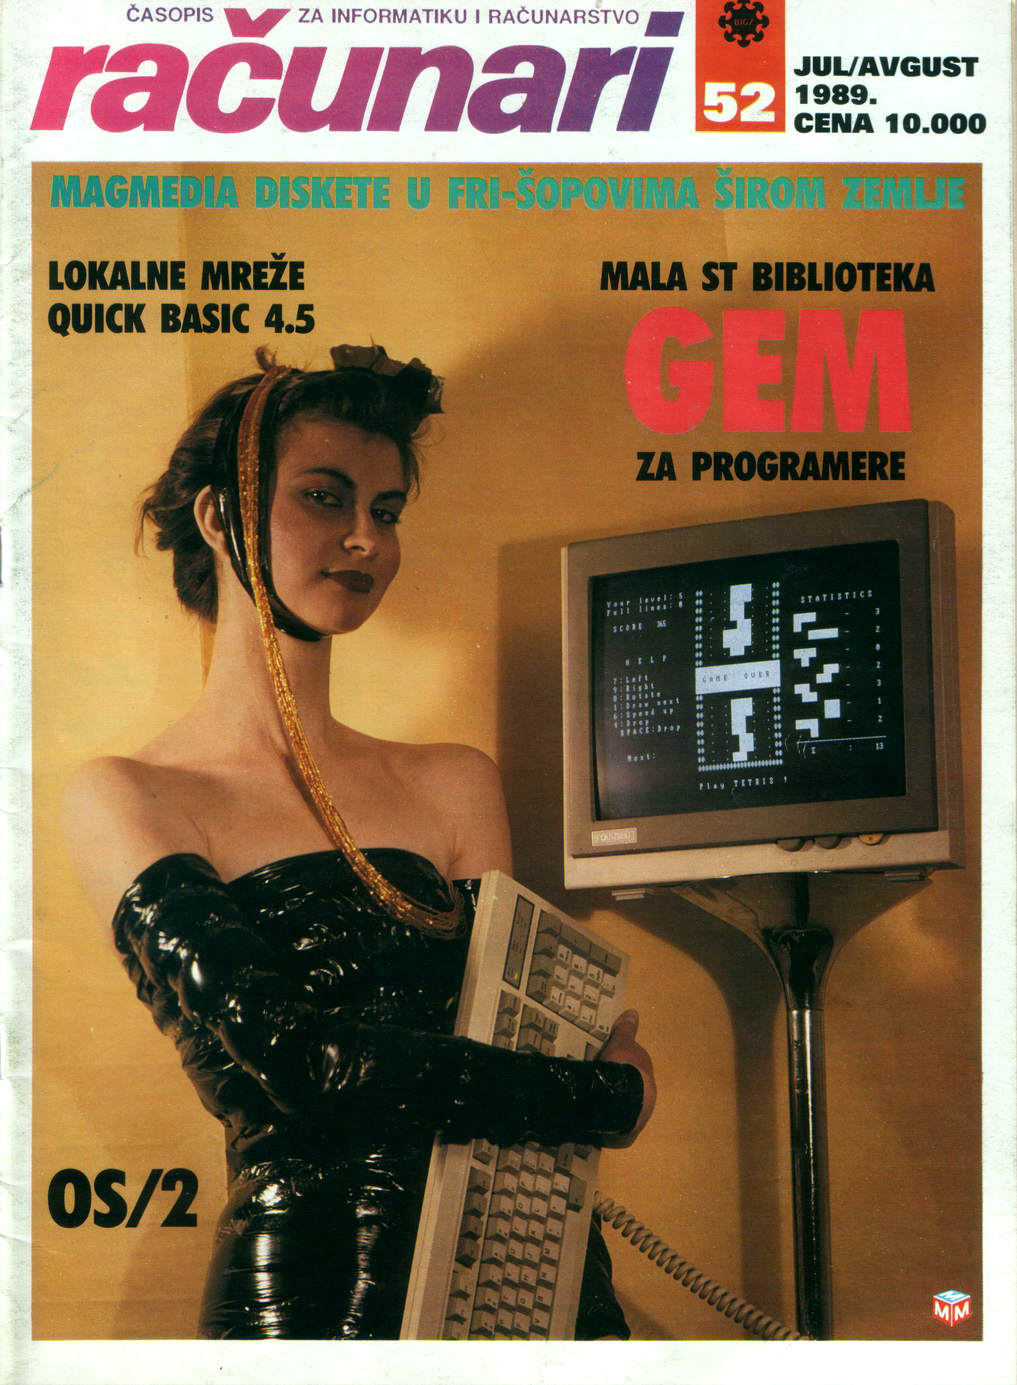 Yugoslavian Computer Magazine Cover Girls of the 1980s-90s - Flashbak